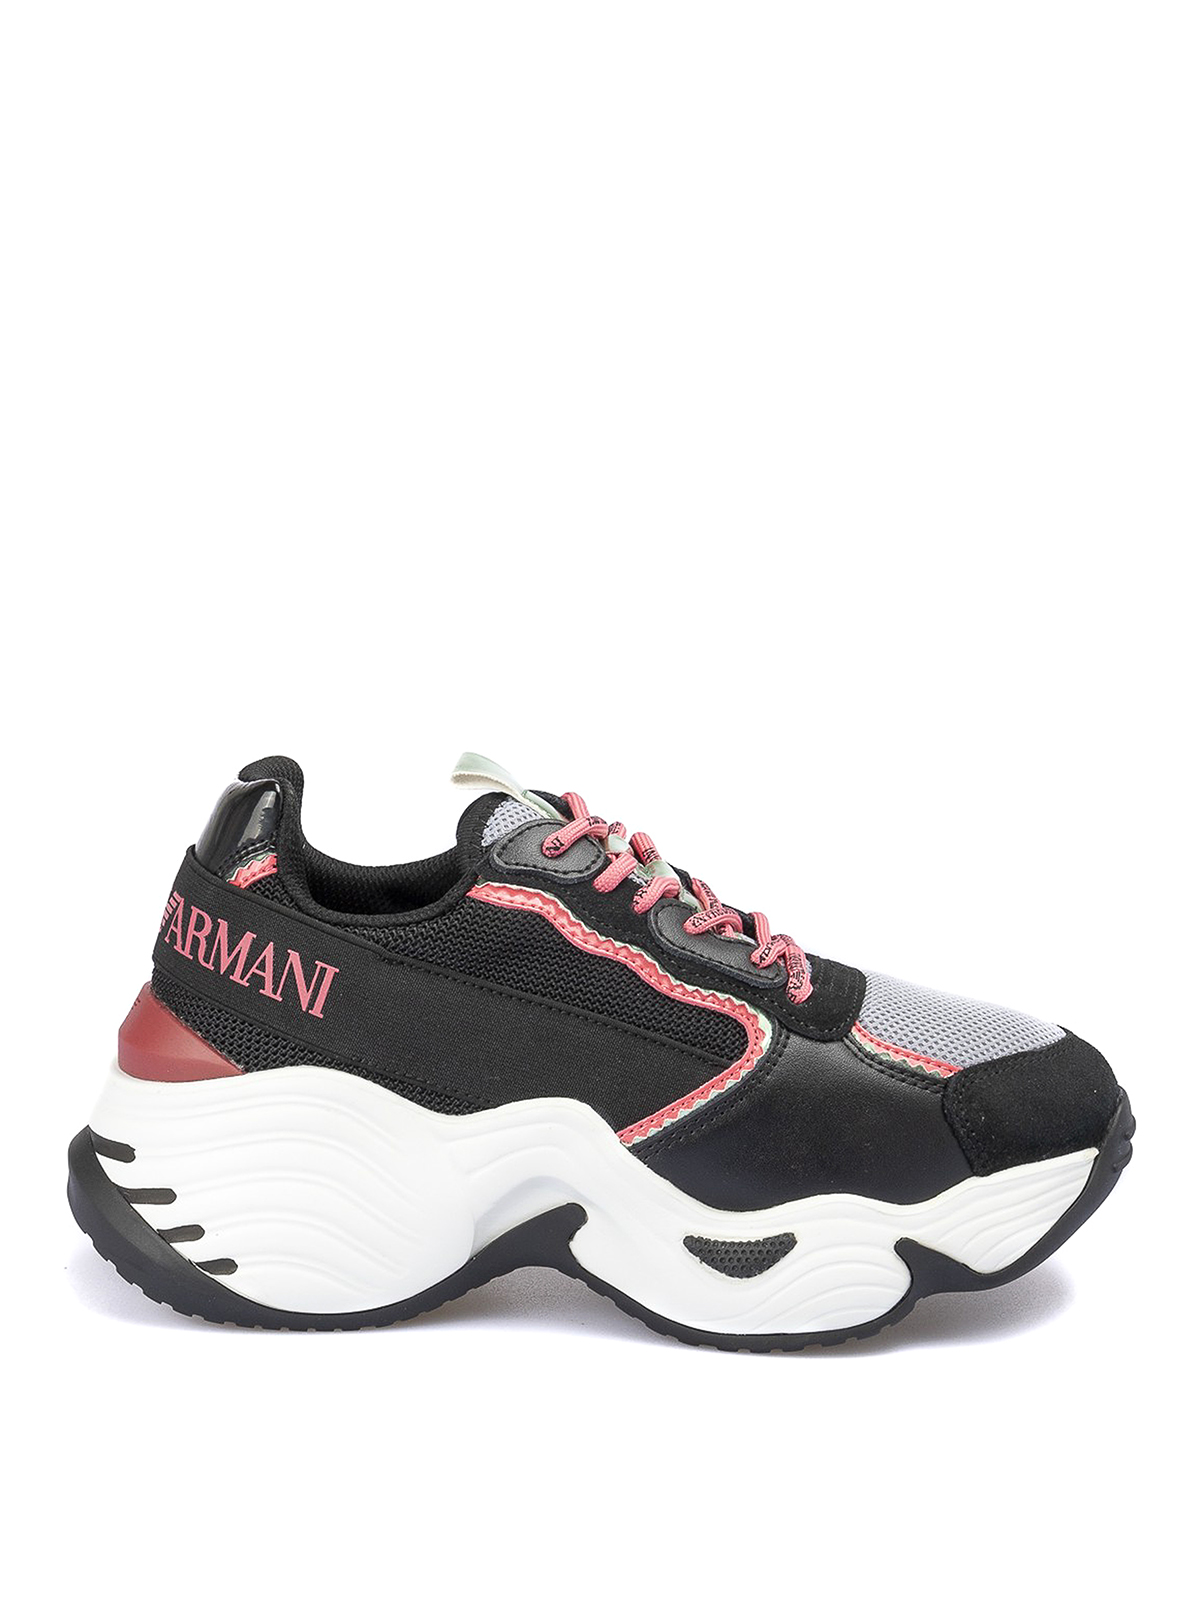 armani sneakers sale